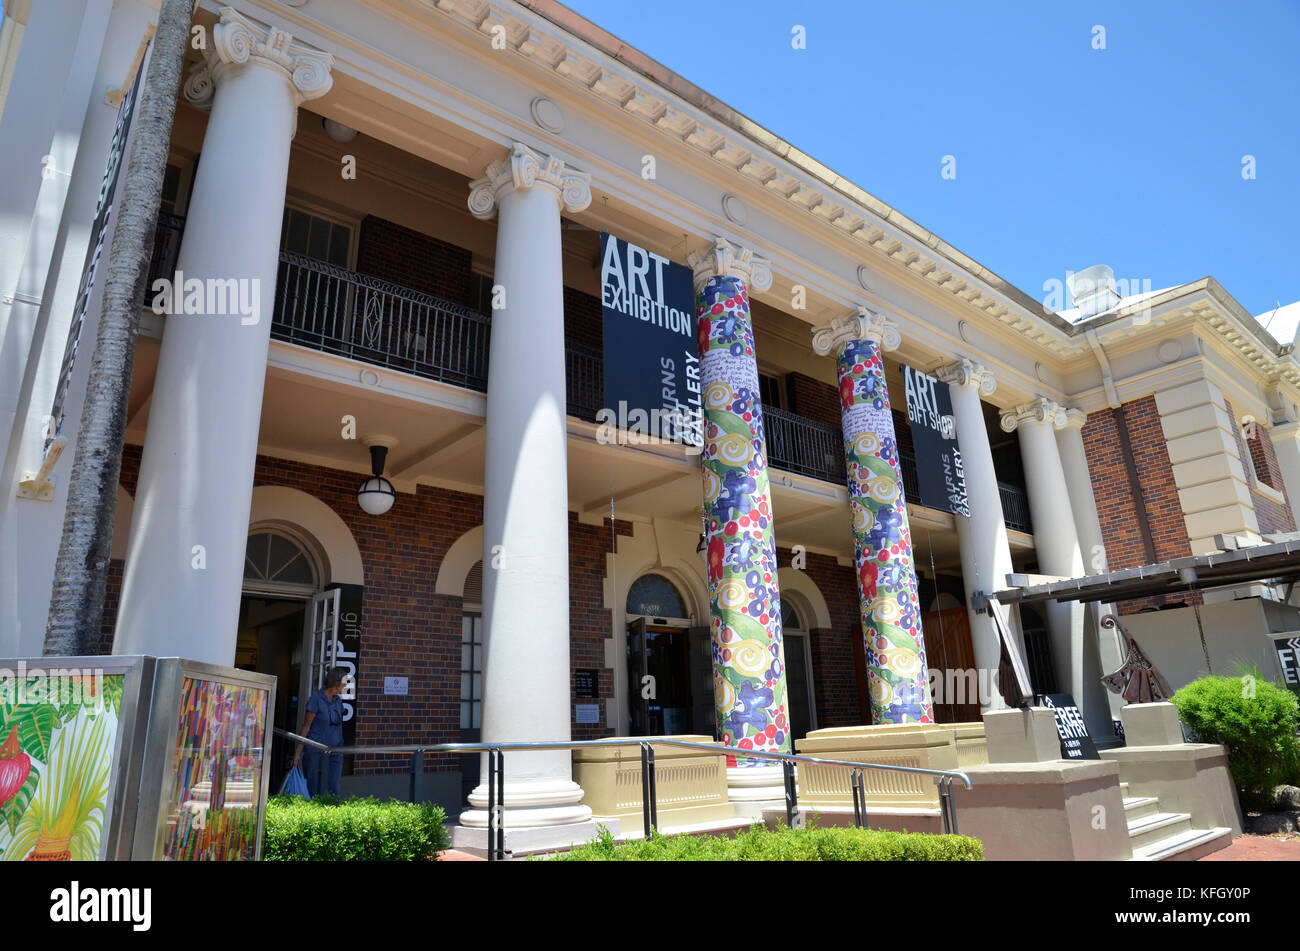 The Art Gallery in Cairns, Queensland, Australia. Stock Photo